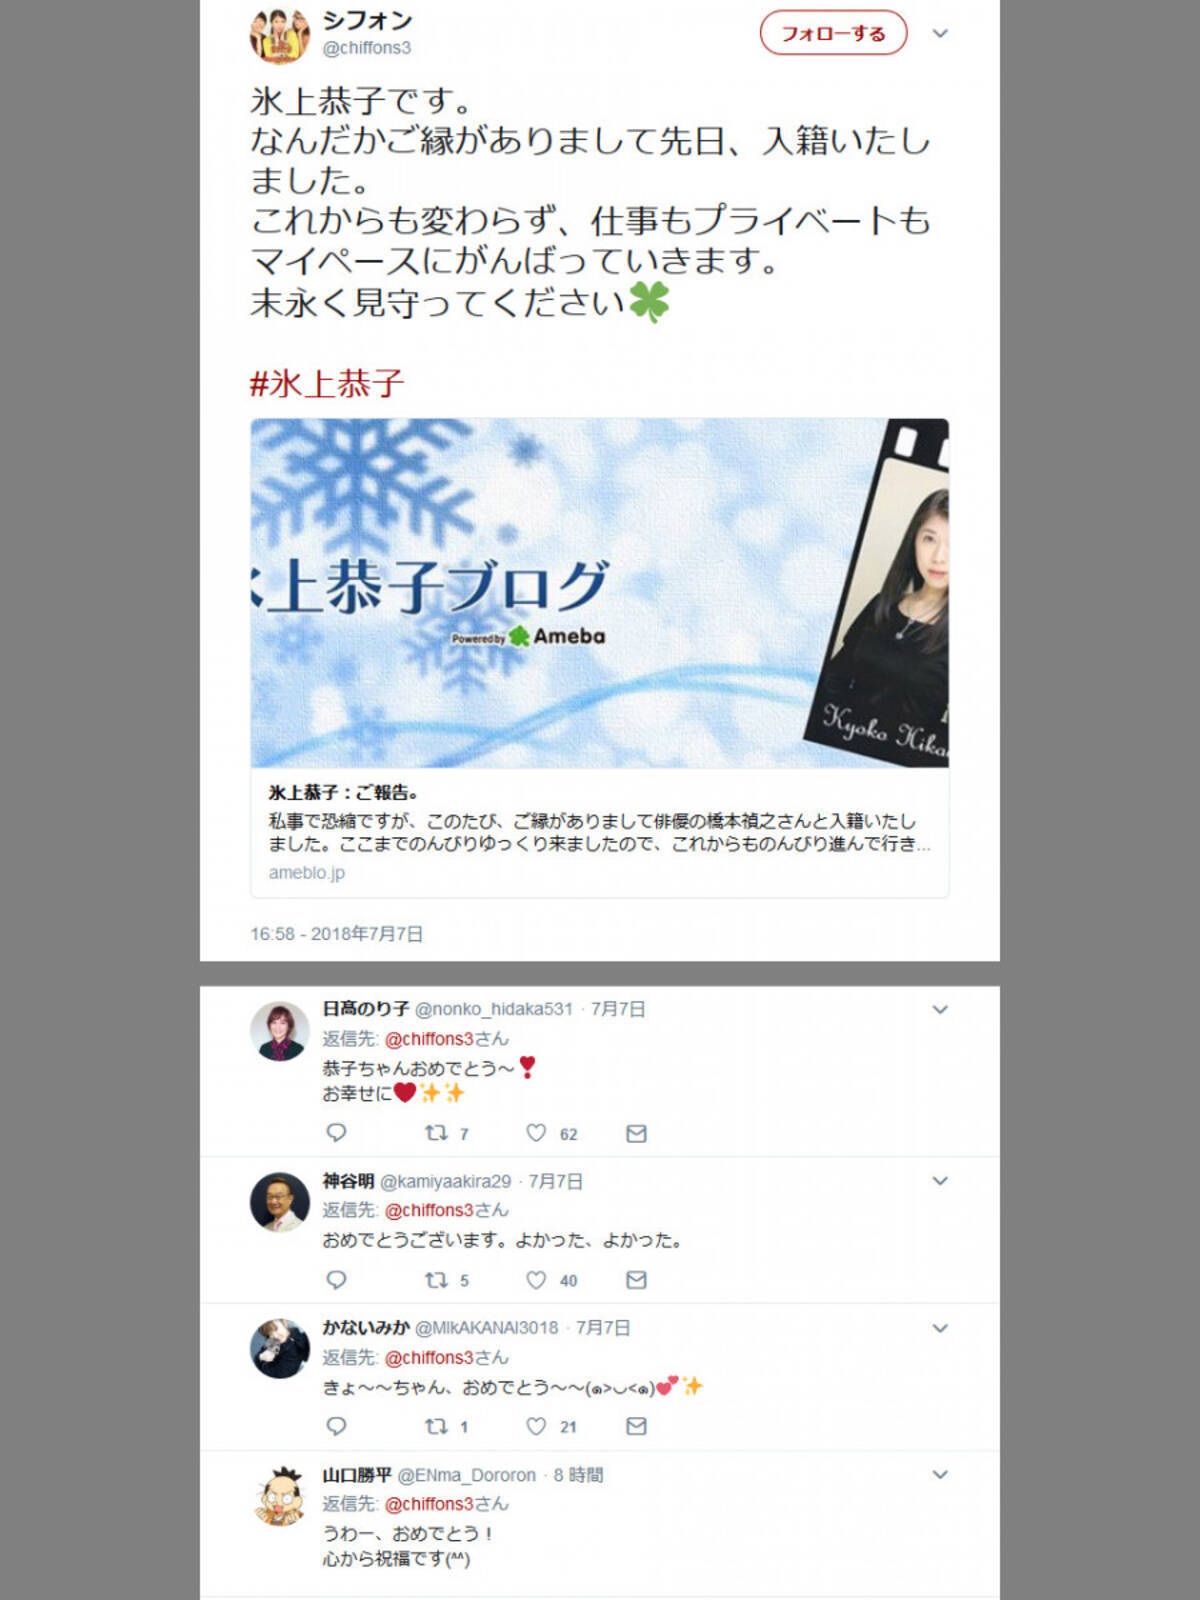 声優 氷上恭子さんが俳優 橋本禎之さんと結婚 大物声優さんたちからの祝福ツイート相次ぐ 2018年7月9日 エキサイトニュース